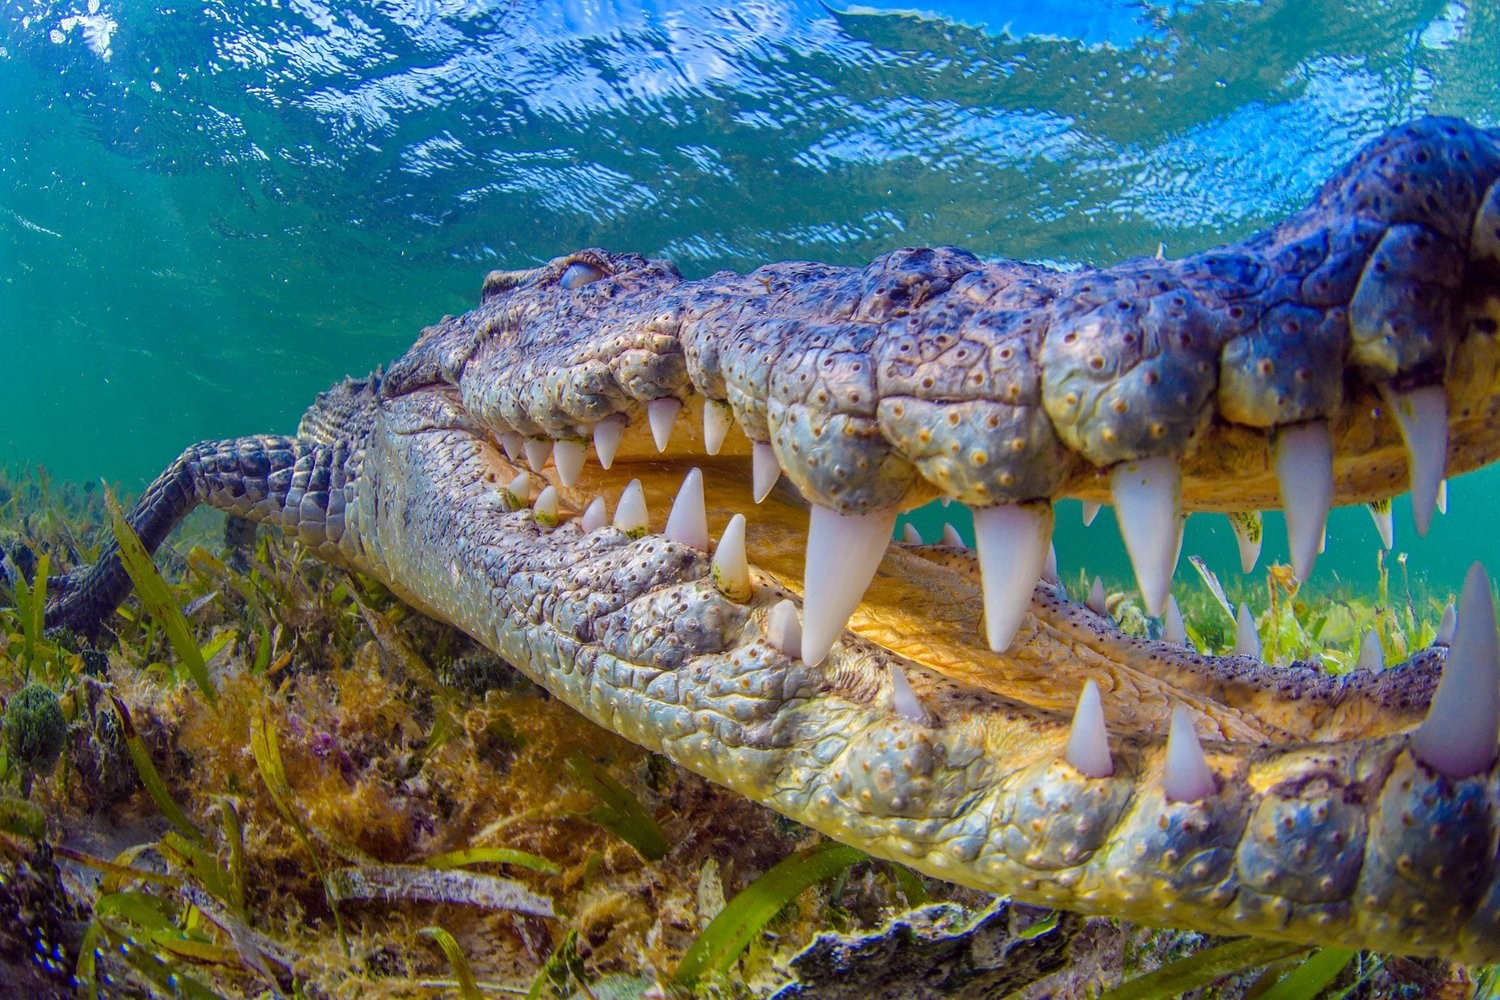 它们的牙齿坚硬而有力,约80颗左右鳄鱼终生都在换牙